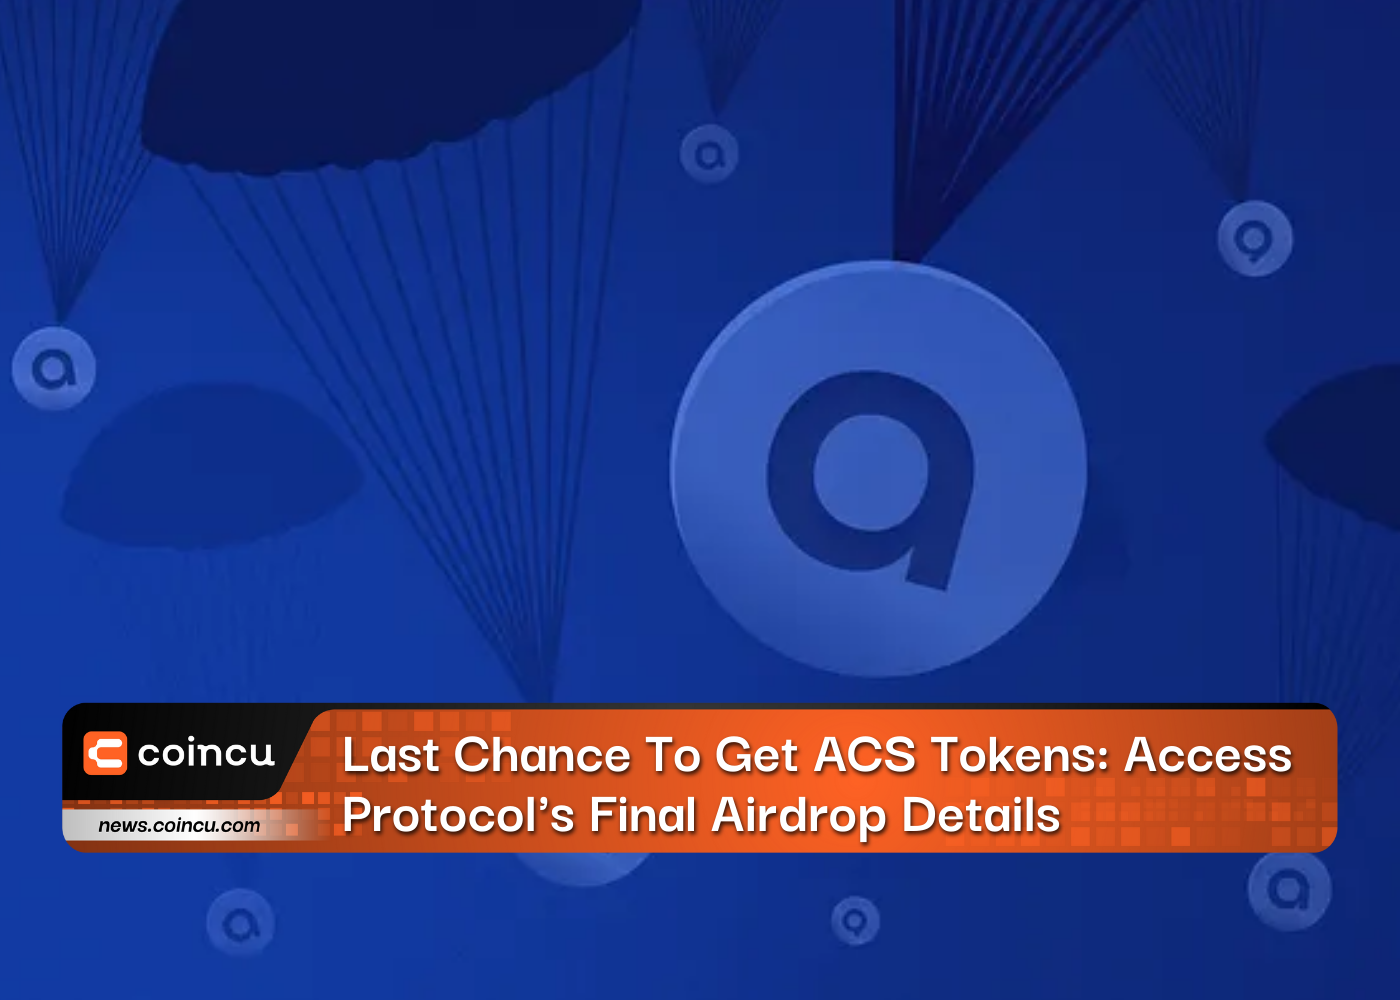 Letzte Chance, ACS-Tokens zu erhalten: Die endgültigen Airdrop-Details von Access Protocol